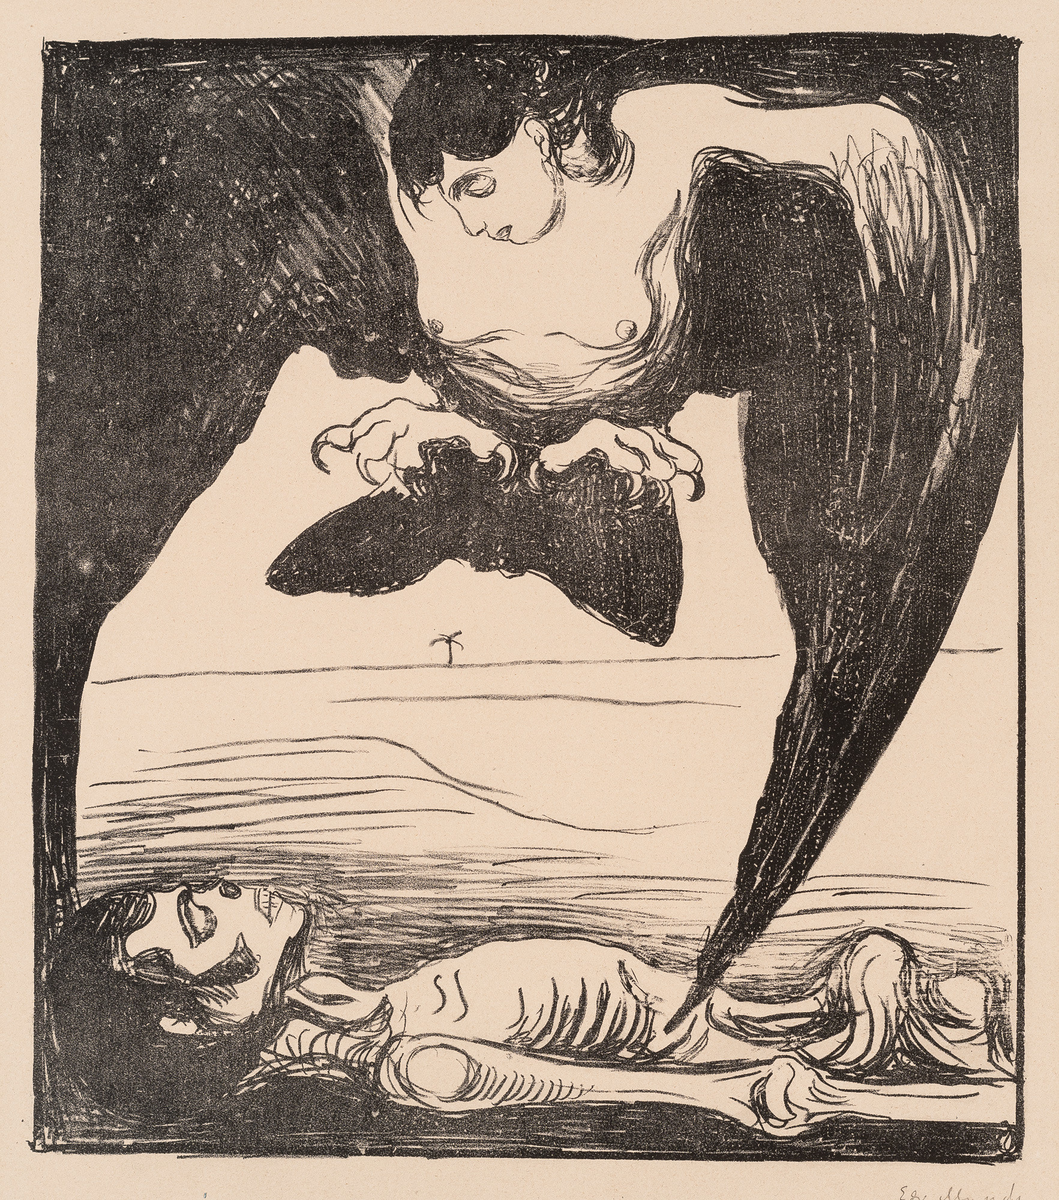 Motivet ble benyttet som illustrasjon i det tyske tidsskriftet "Quickborn" i januar 1899.